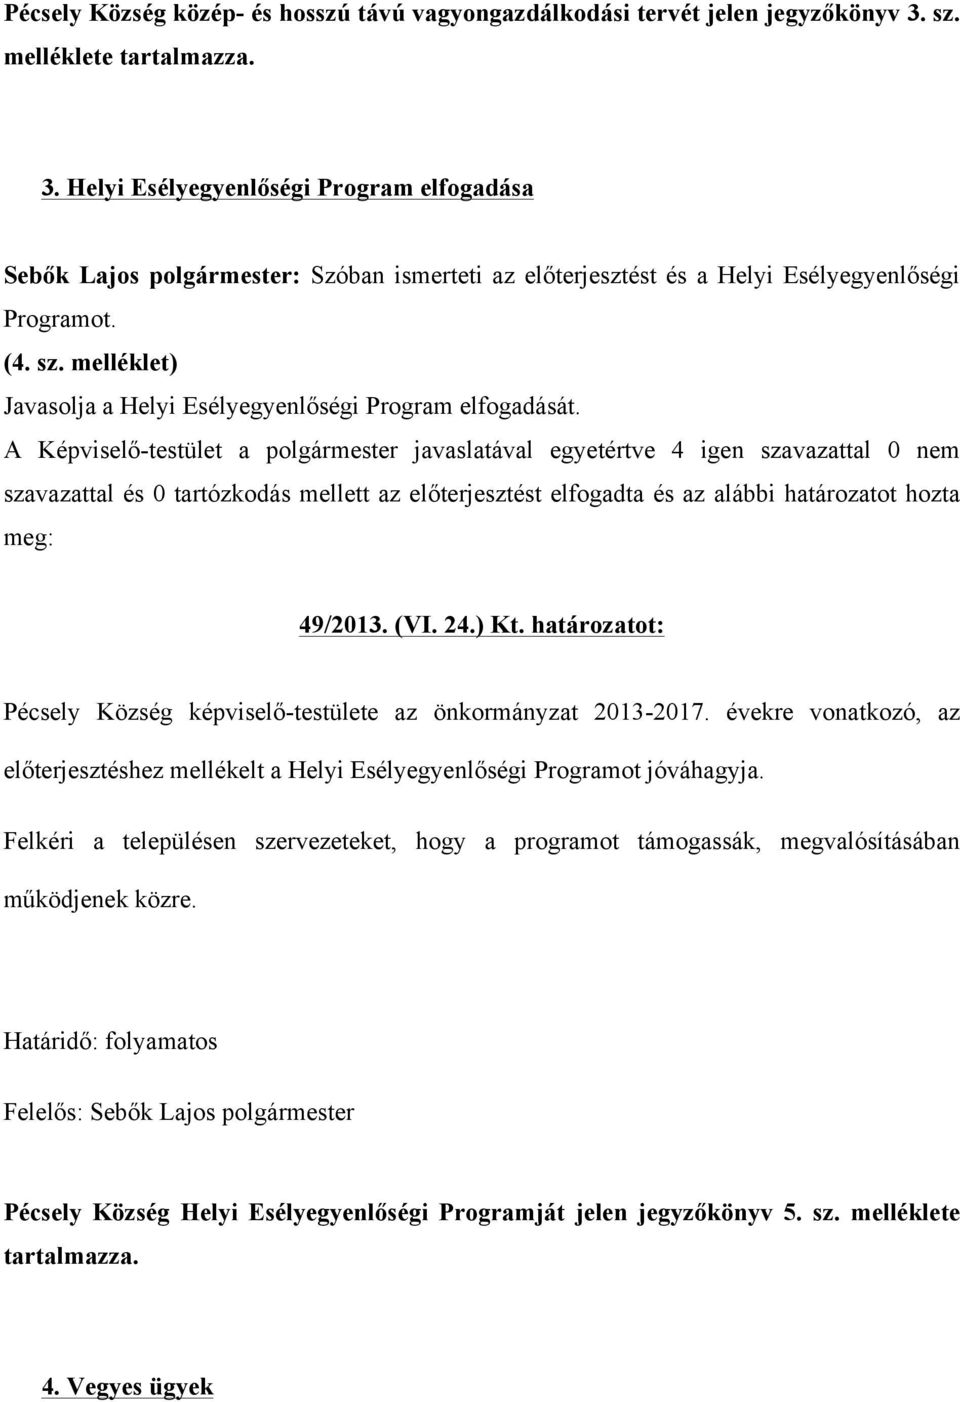 melléklet) Javasolja a Helyi Esélyegyenlőségi Program elfogadását. 49/2013. (VI. 24.) Kt. határozatot: Pécsely Község képviselő-testülete az önkormányzat 2013-2017.